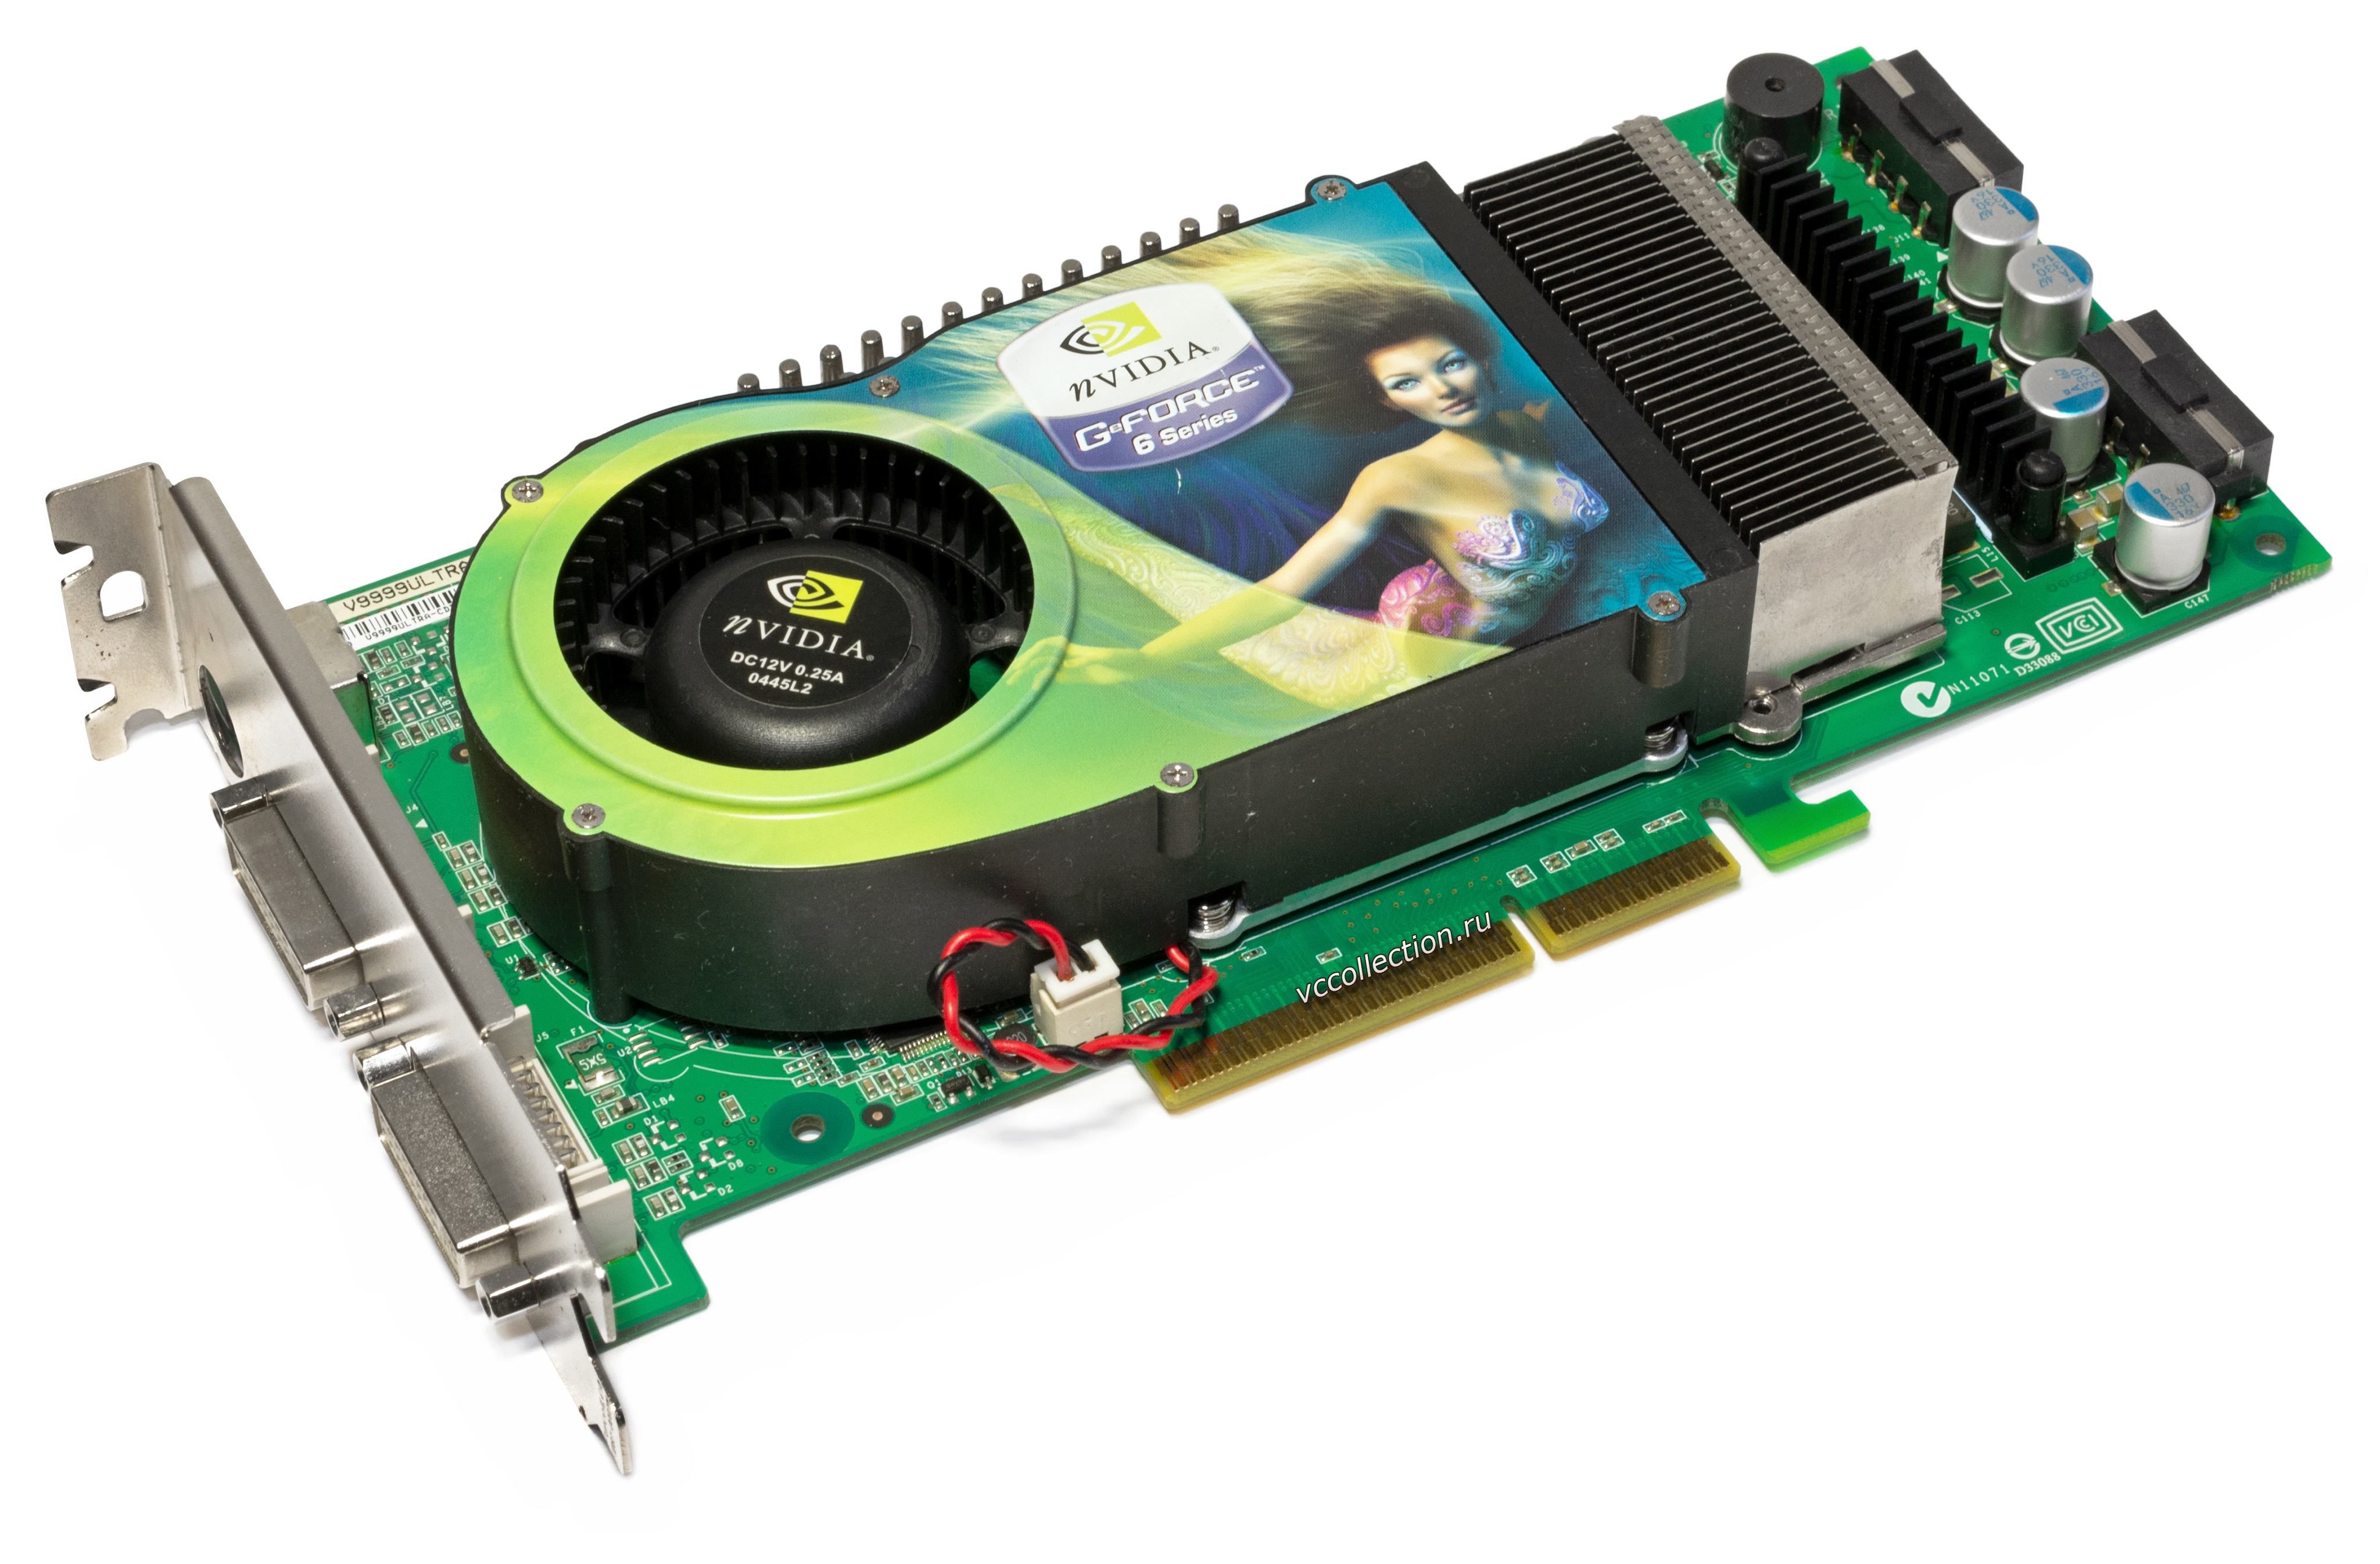 Nvidia geforce последние видеокарты. NVIDIA GEFORCE 6800 ASUS. Видеокарта GEFORCE 6800. GEFORCE 6800 Ultra. Видеокарта нвидиа джифорс 6800 gt.